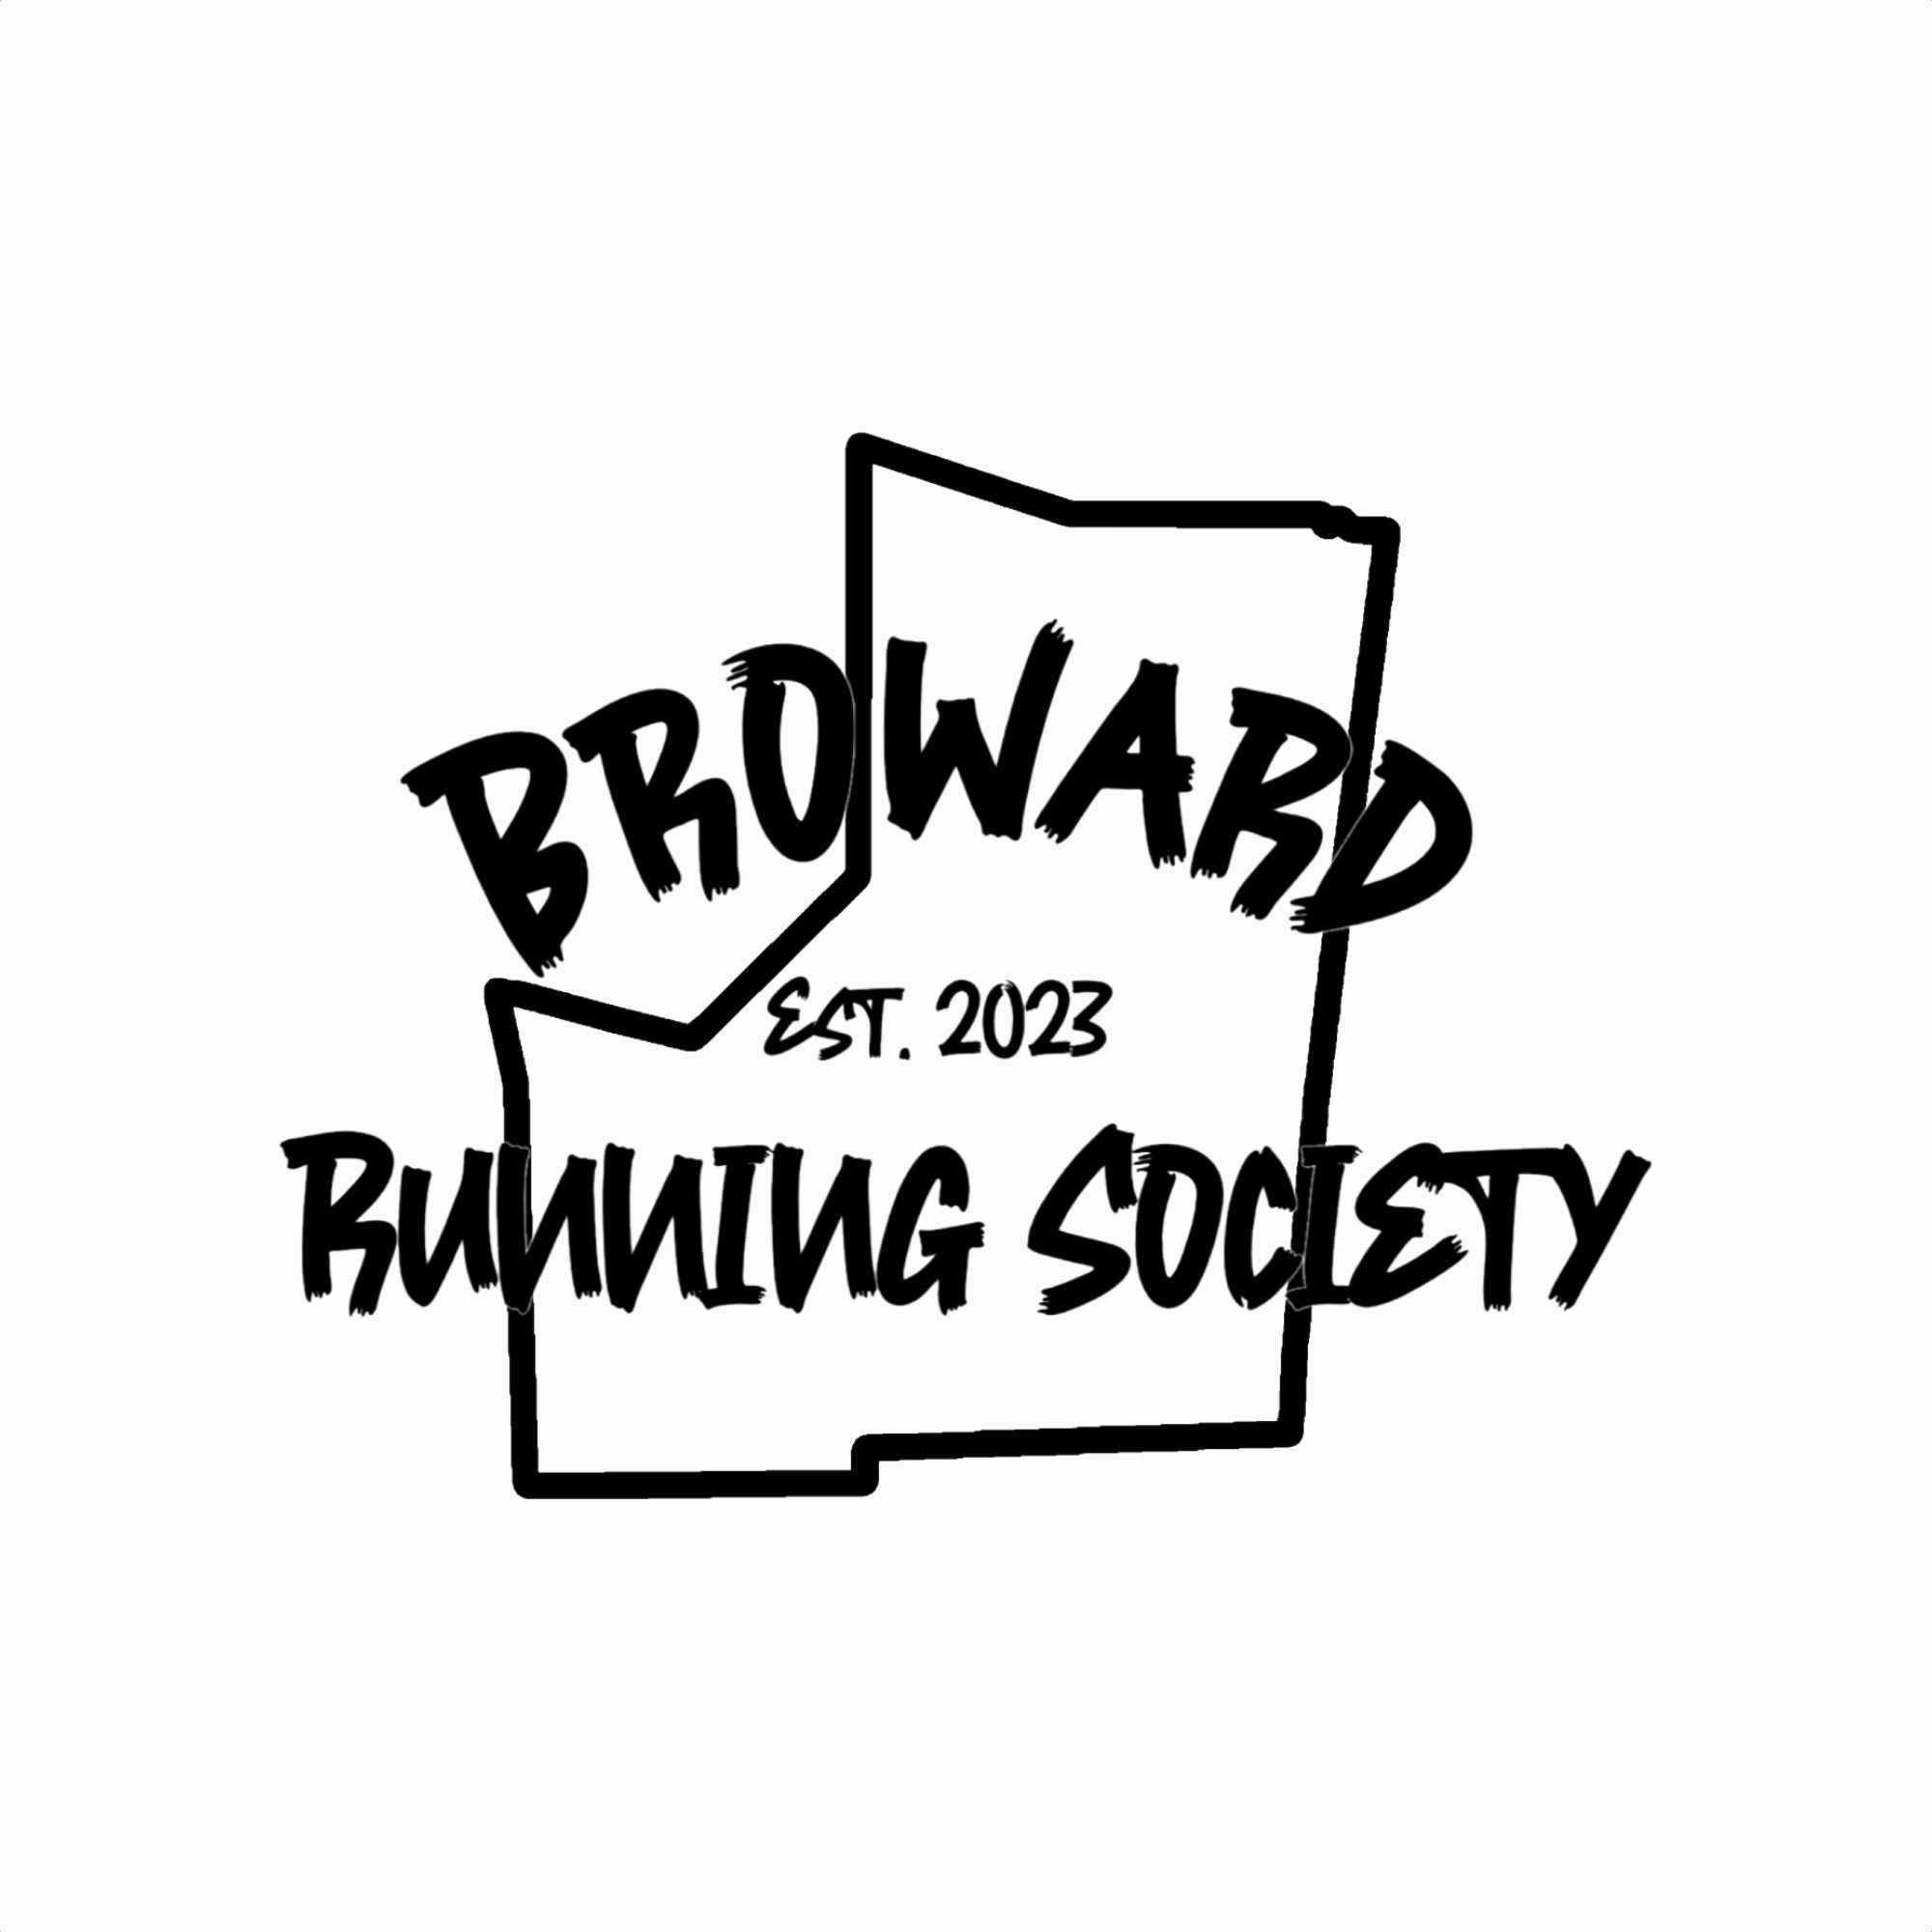 Broward Running Society